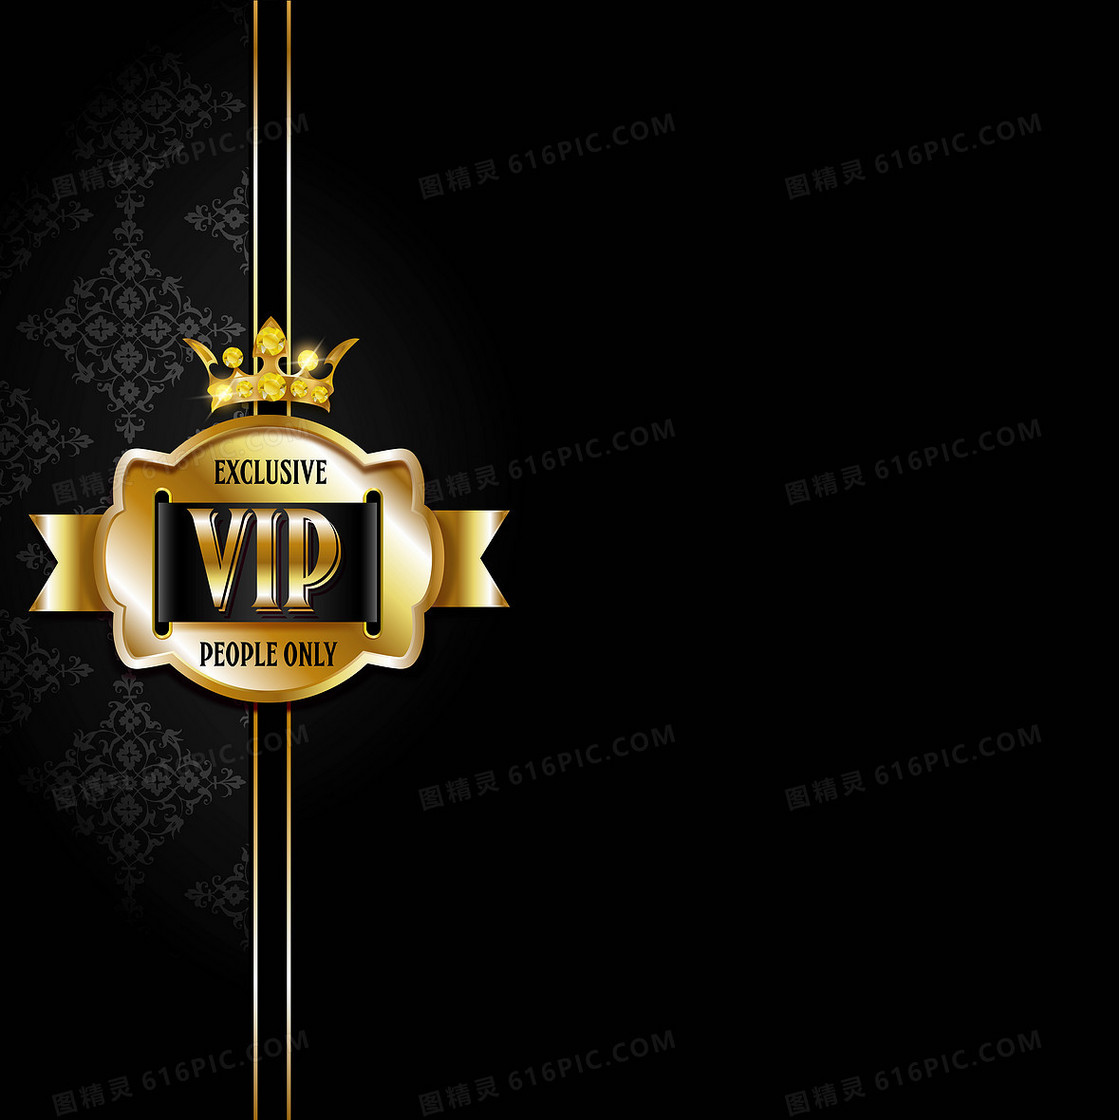 VIP 艺术风格 背景素材